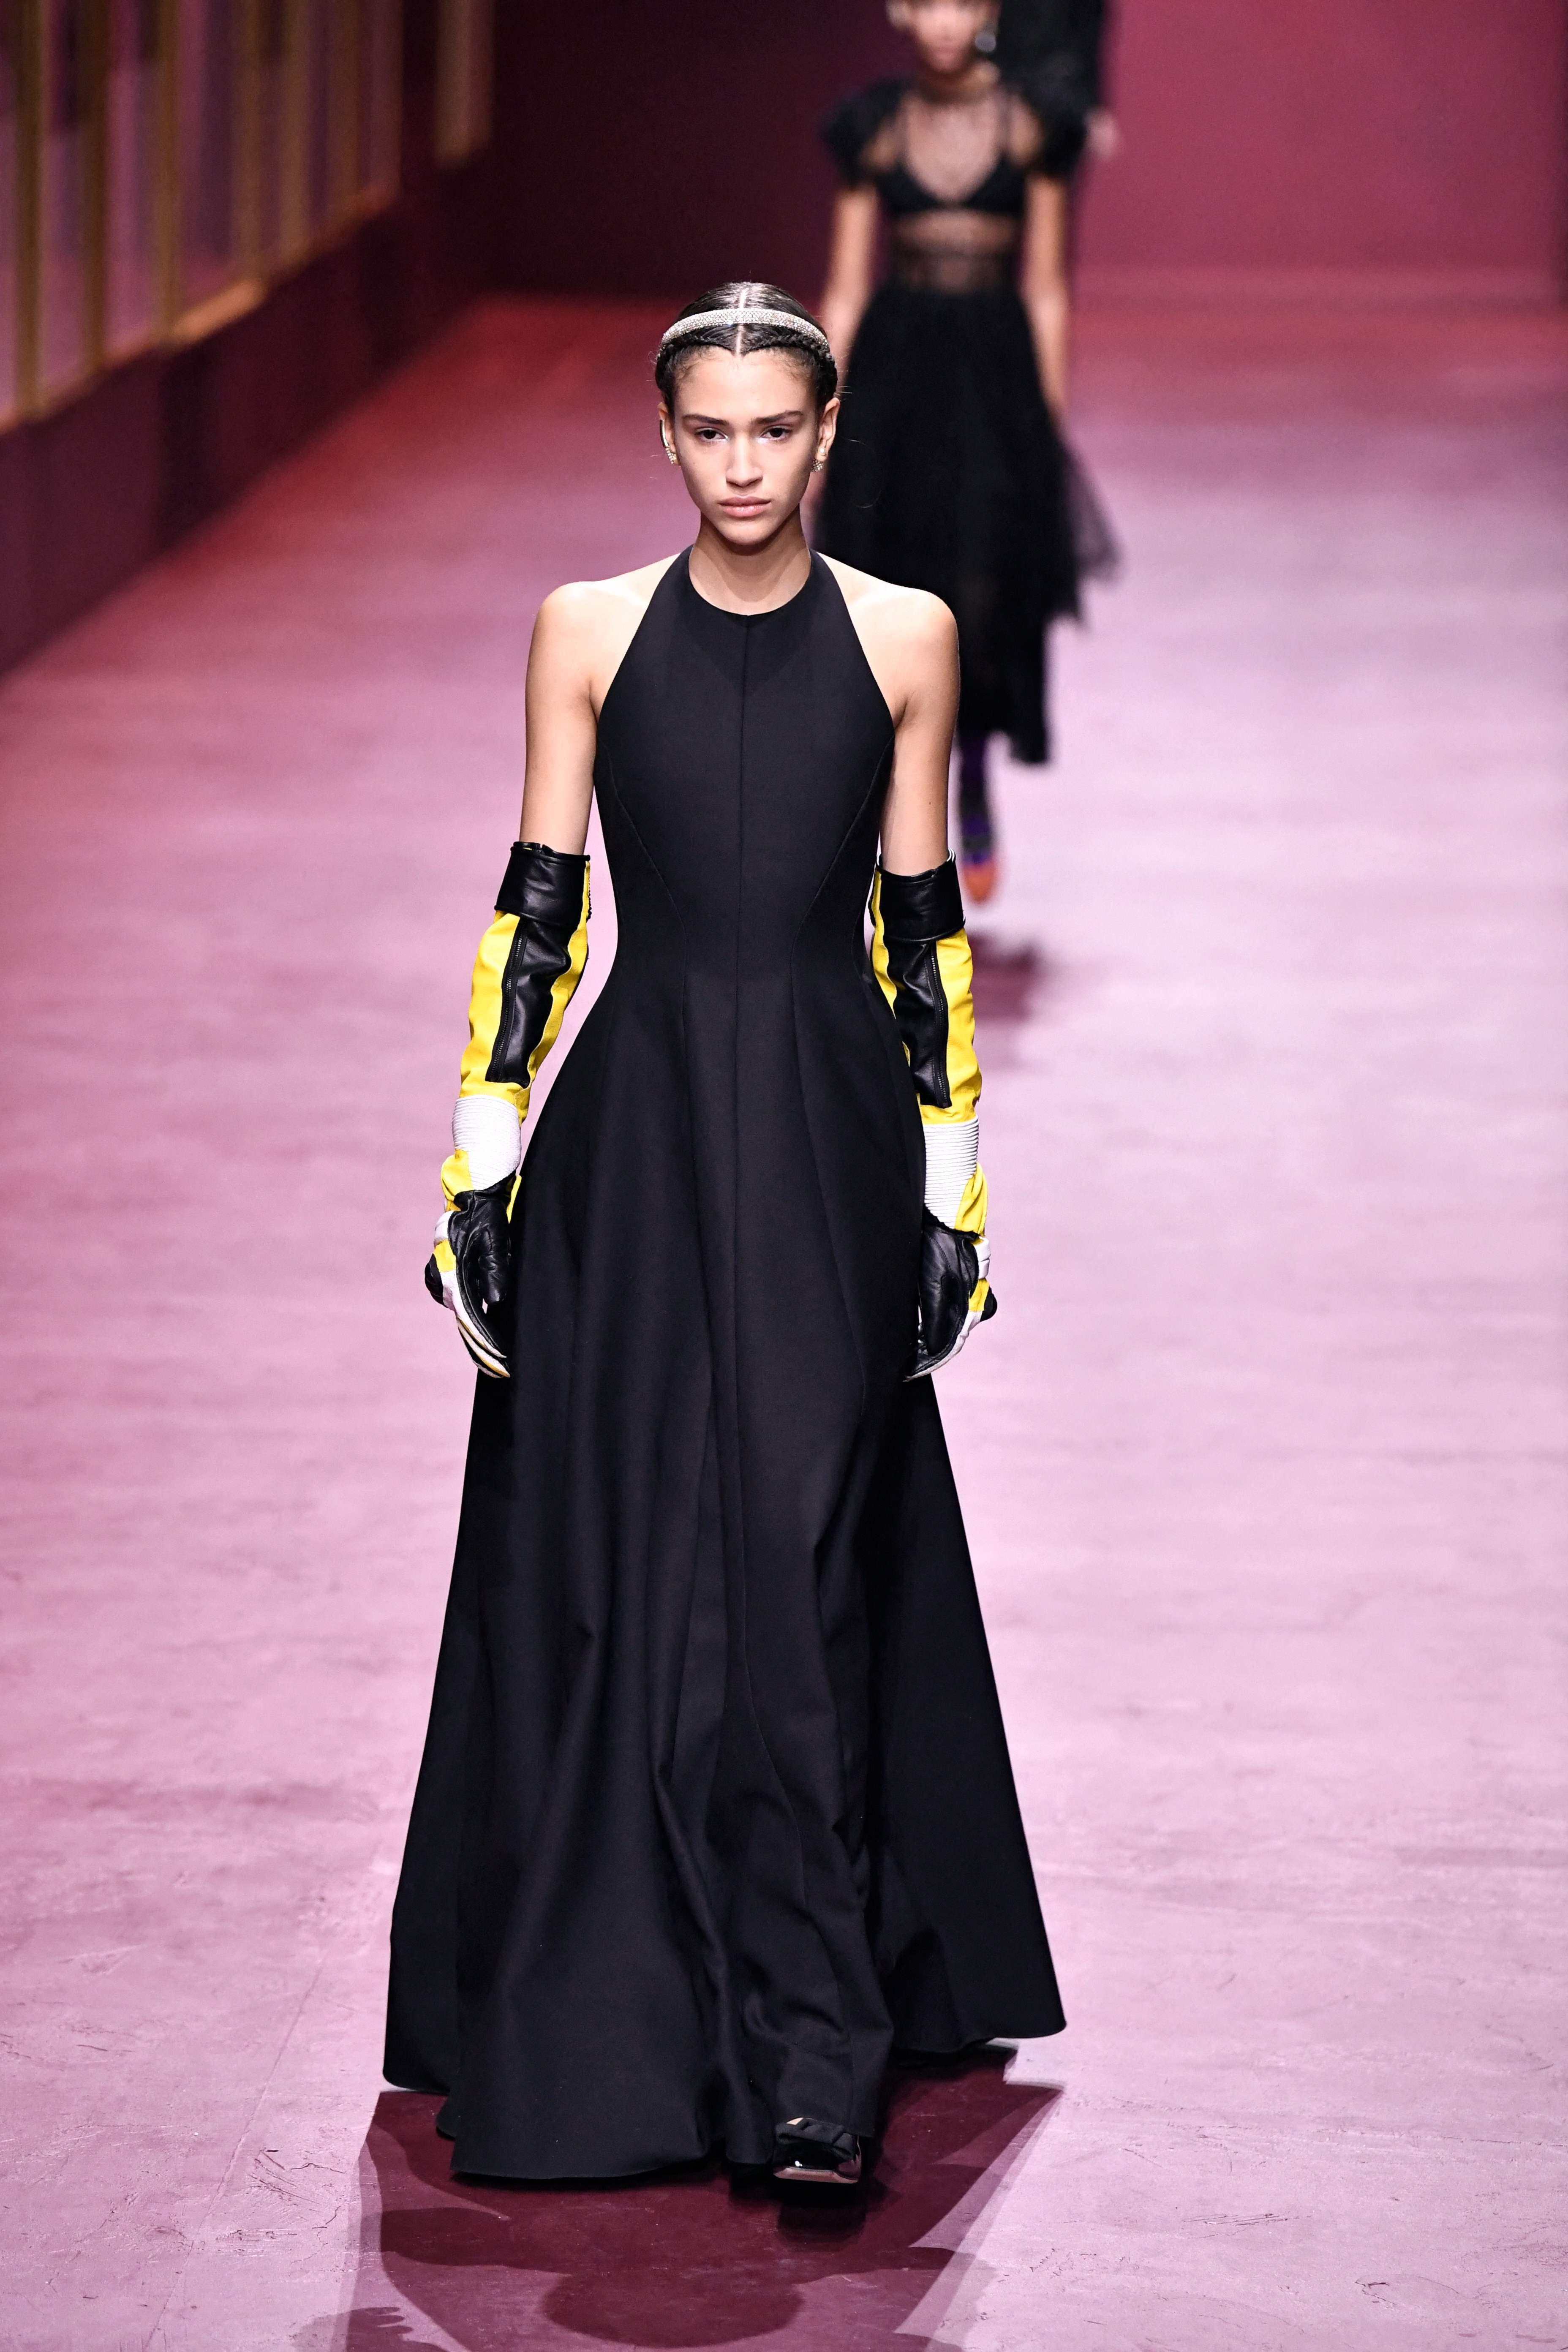 DIOR: Sporty møter klassisk med denne Dior-looken. Den svarte ballkjolen fikk et langt mer sporty uttrykk med disse hanskene. Hva tenker du? Blir dette neste års look til julebordssesongen?